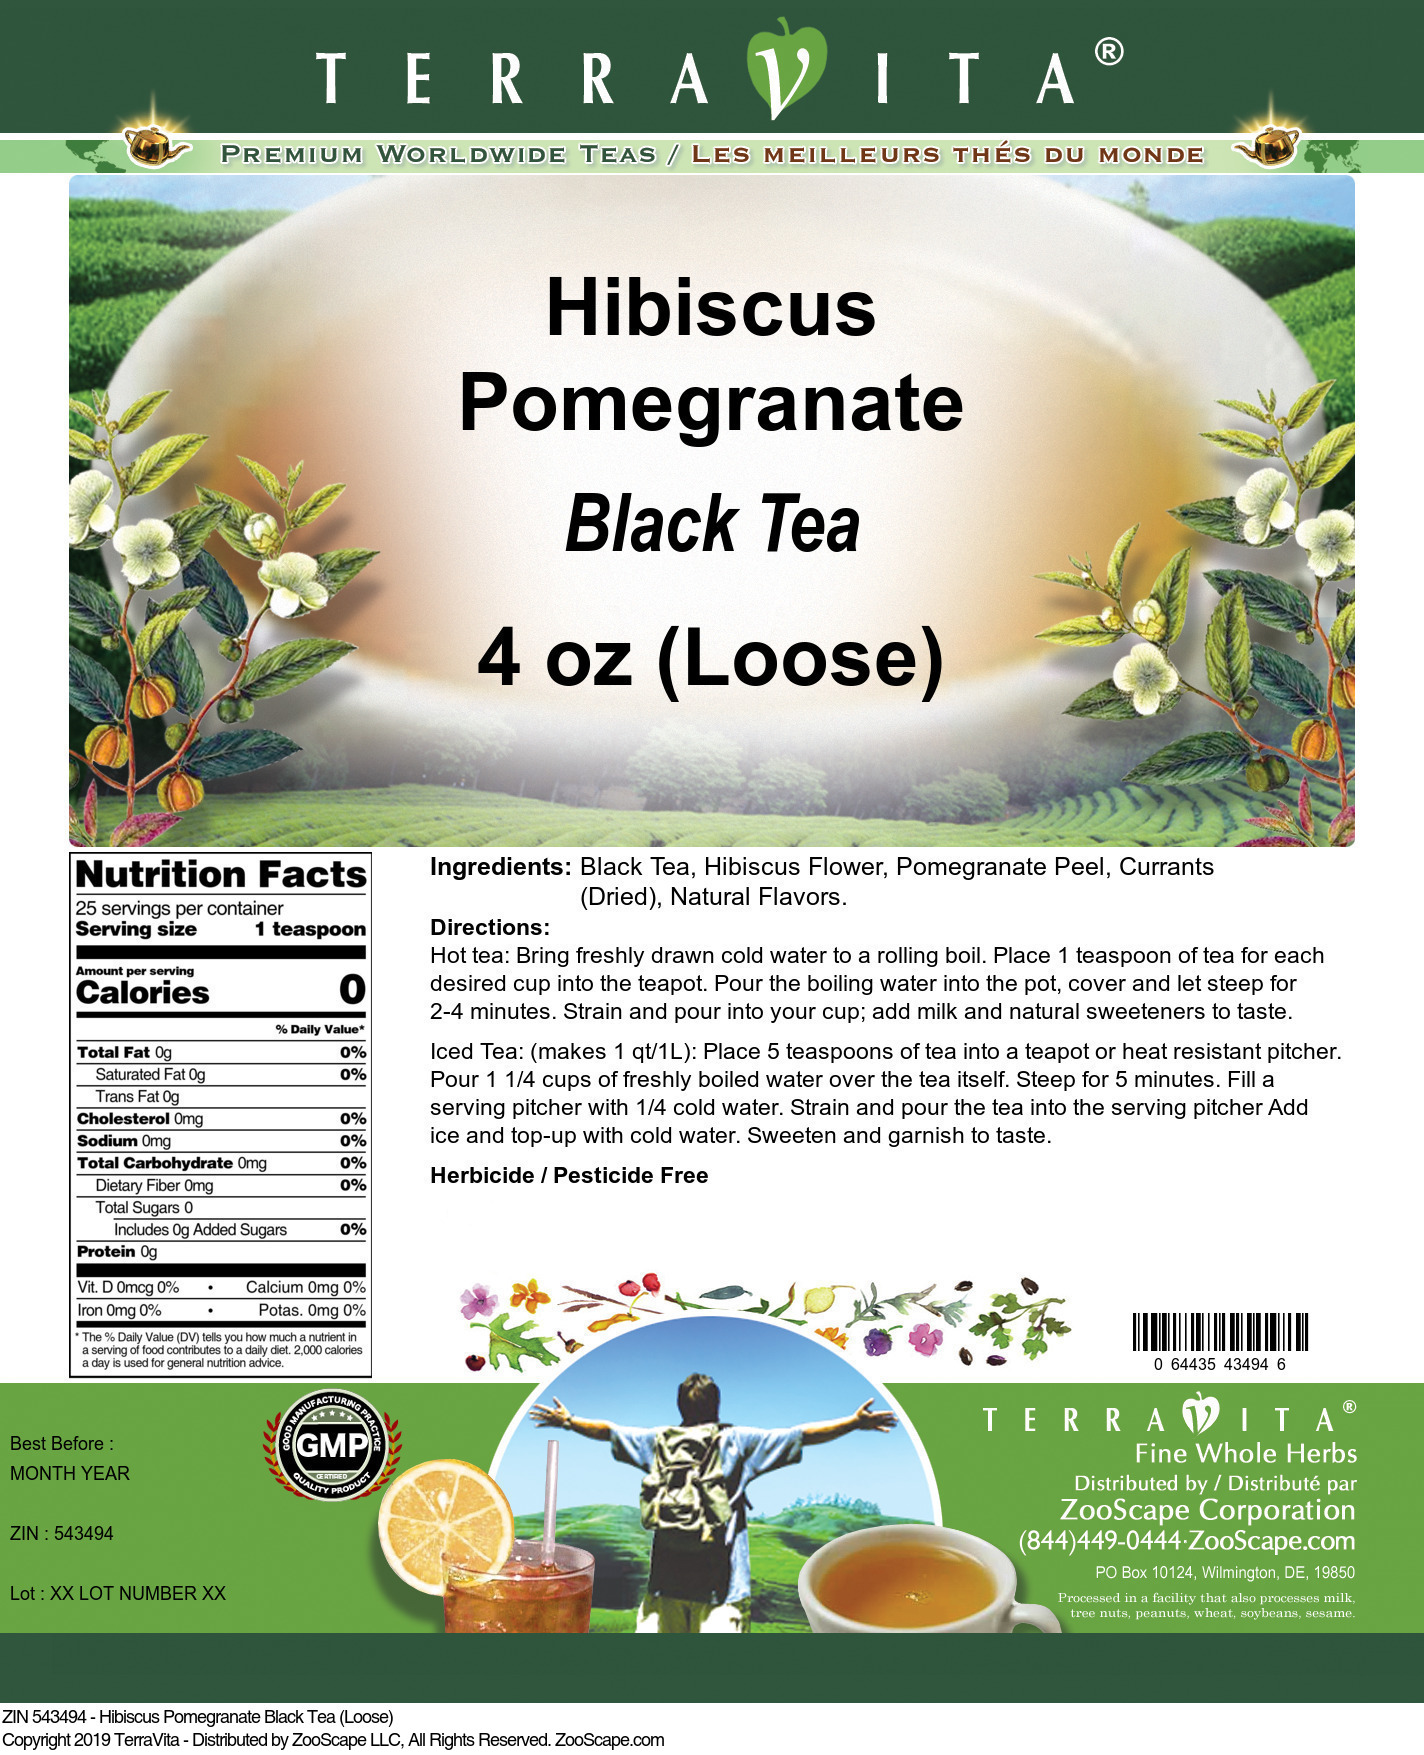 Hibiscus Pomegranate Black Tea (Loose) - Label